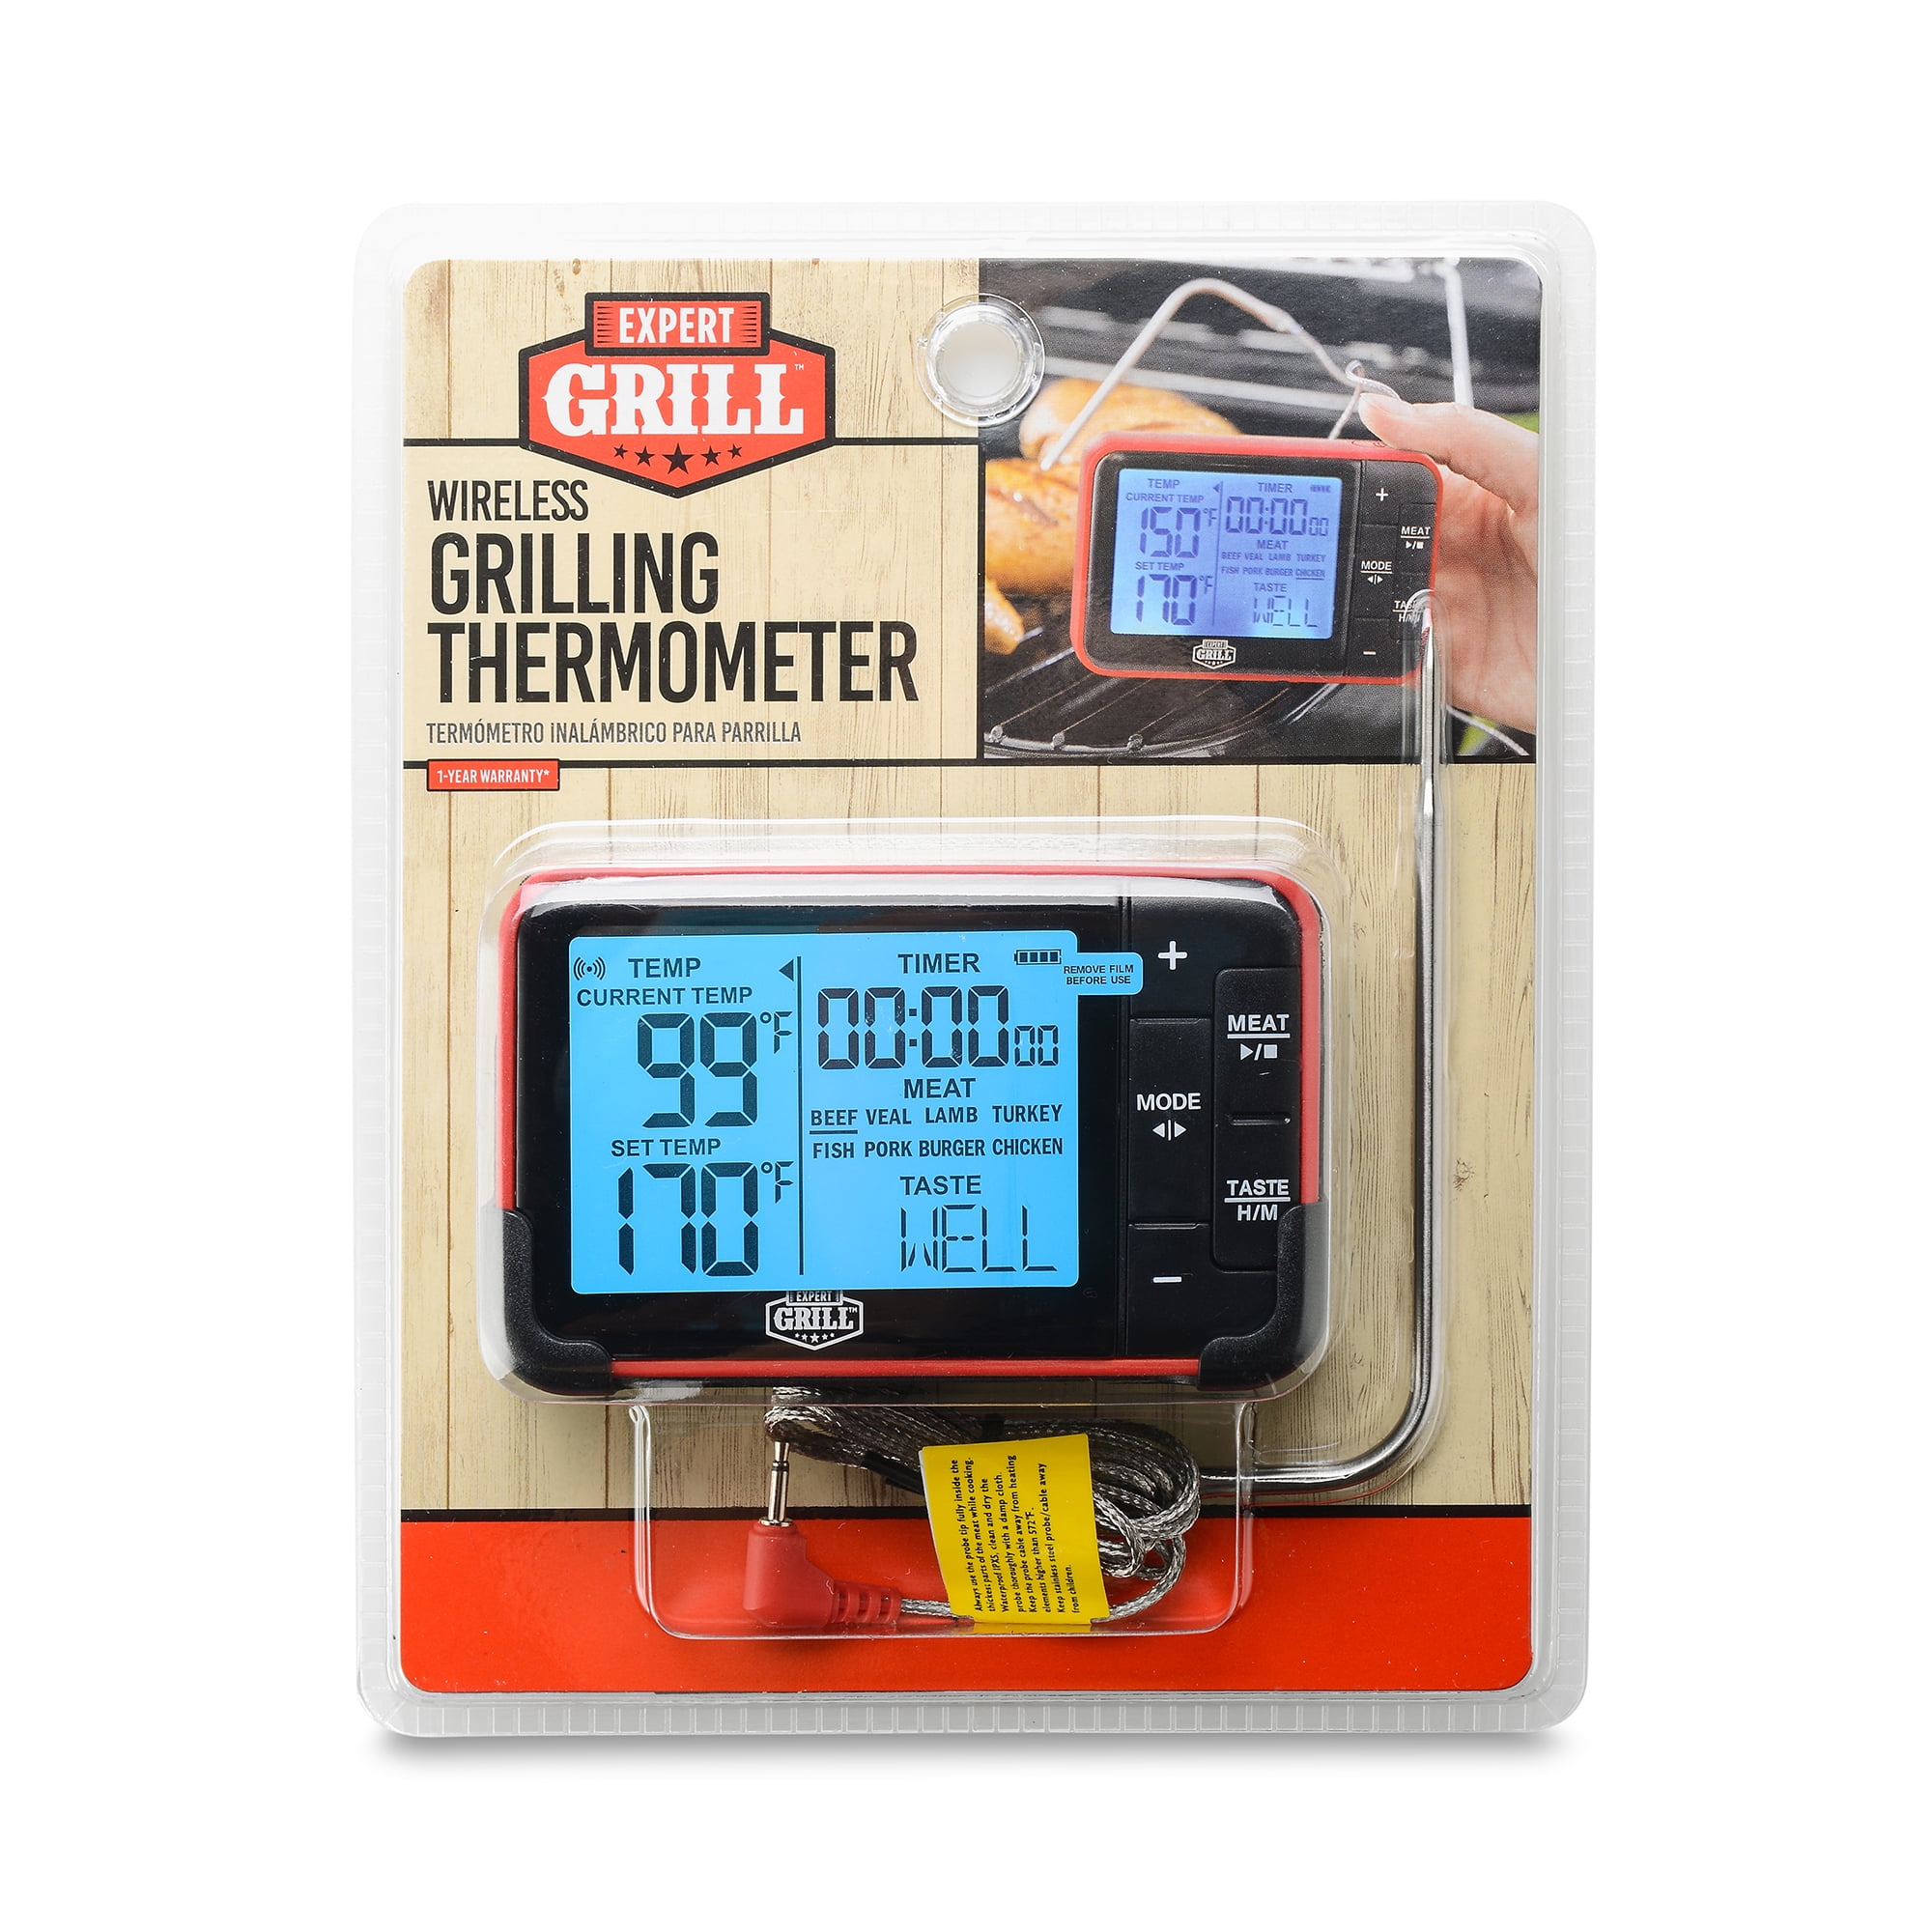 pengeoverførsel efterår brænde Expert Grill Wireless Digital BBQ Grilling Thermometer - Walmart.com